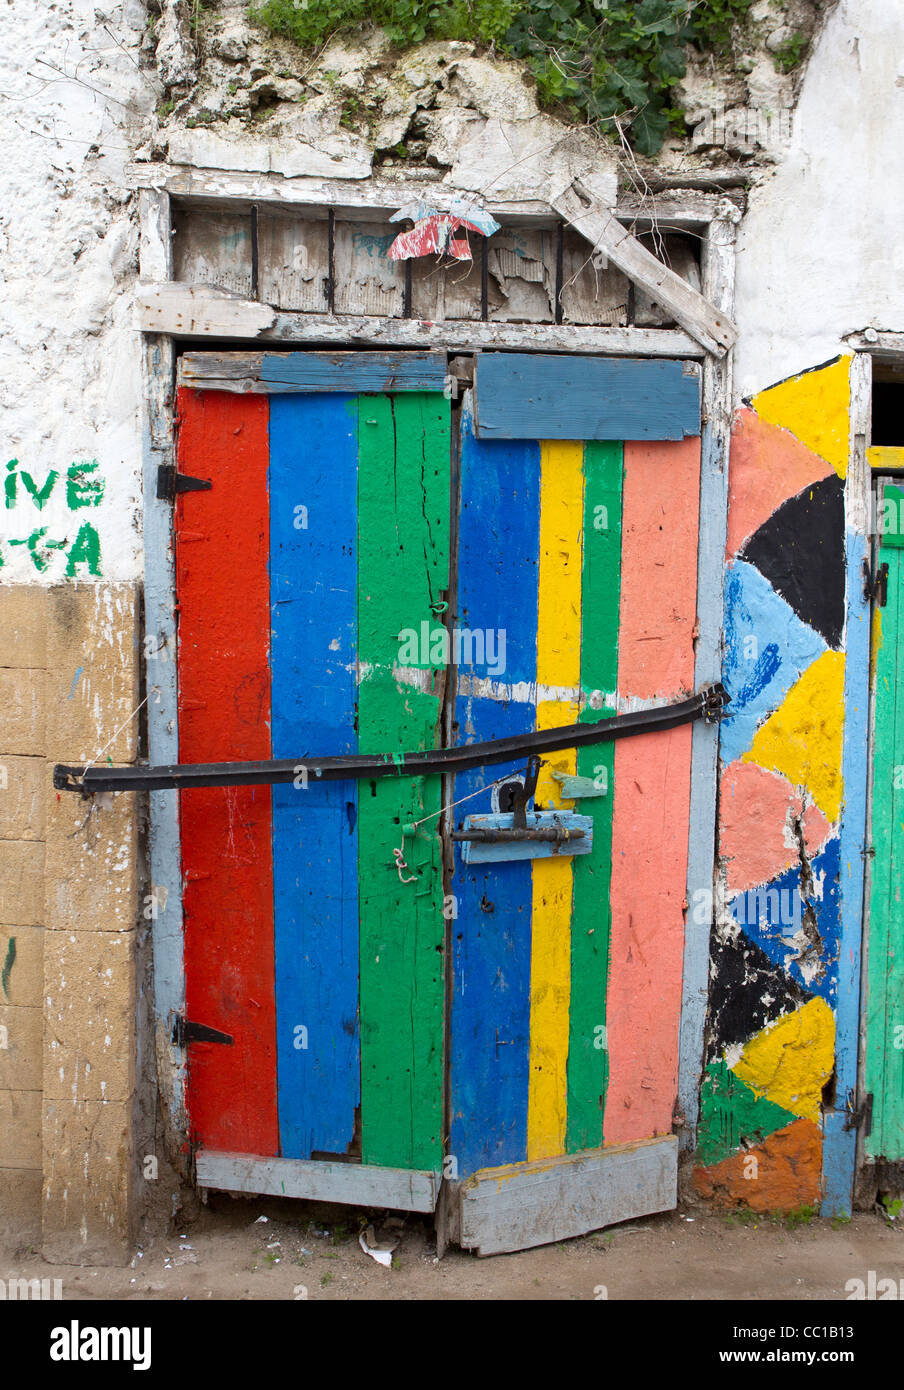 Peint dans des couleurs vives, bien qu'un peu délabré, portes à El Jadida, Maroc Banque D'Images